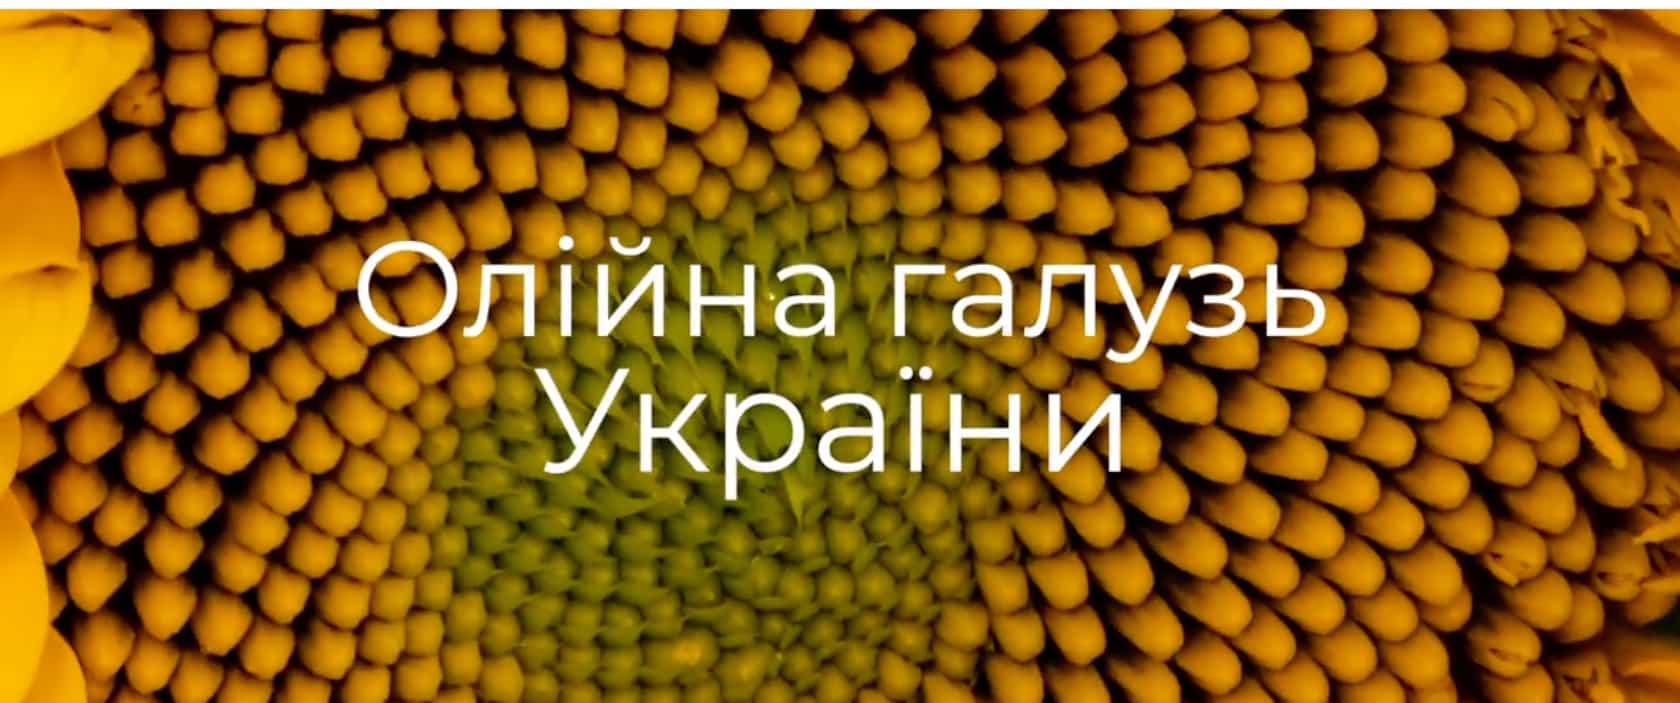 Case documentary films" Film The Oil Industry of Ukraine"